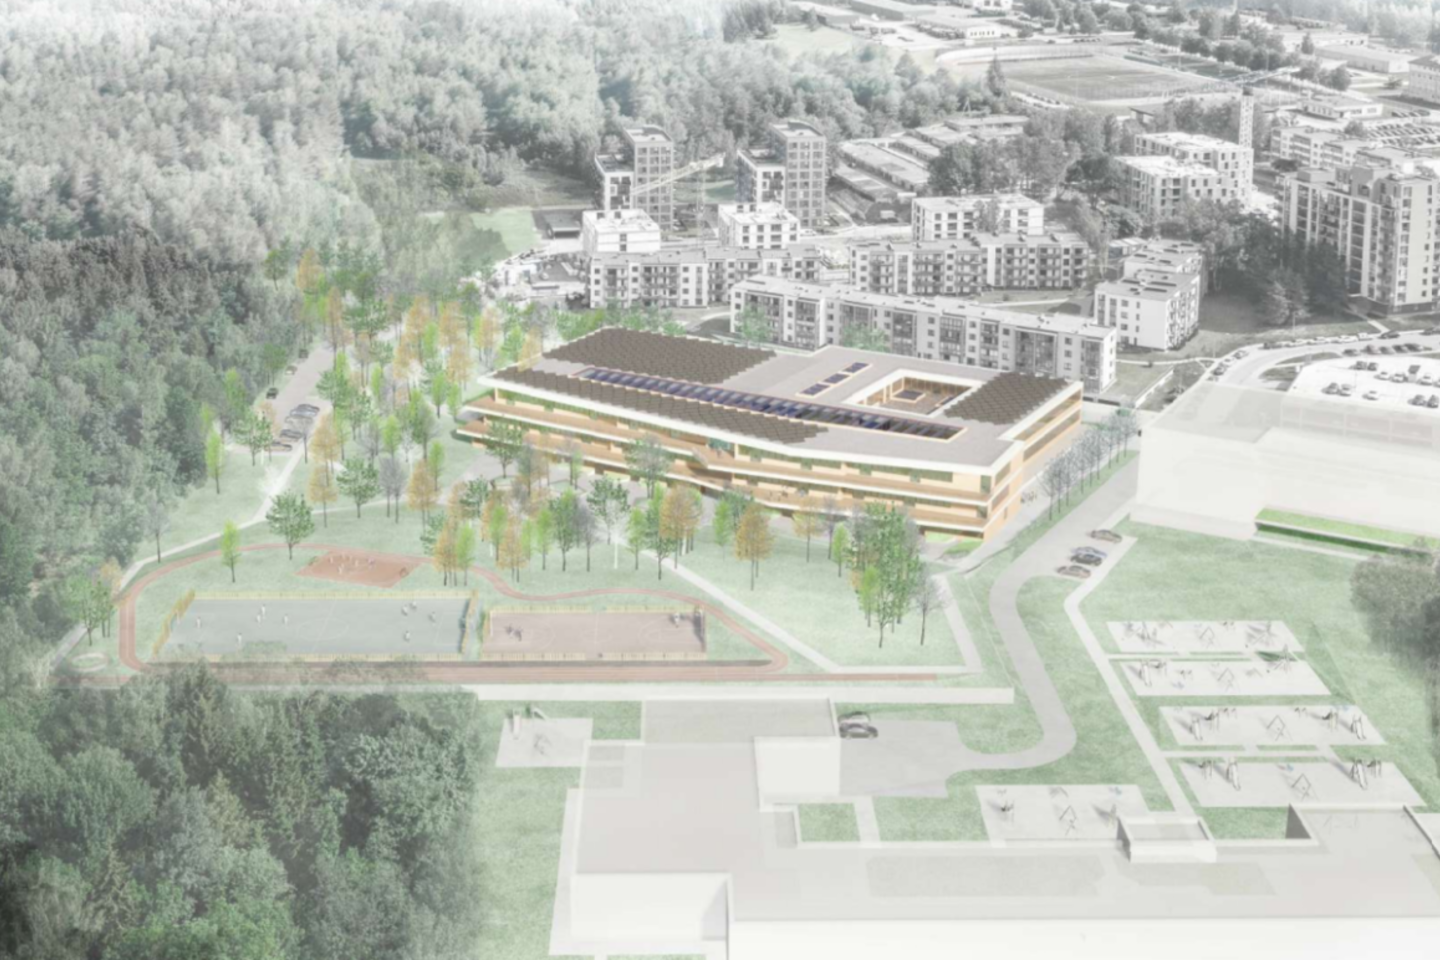 Verkių seniūnijoje, Bajorų kelyje 12, projektuojama nauja mokykla. Moderni ir šiuolaikinius poreikius atitinkanti progimnazija galės priimti daugiau kaip 900 moksleivių.<br> Vizual.